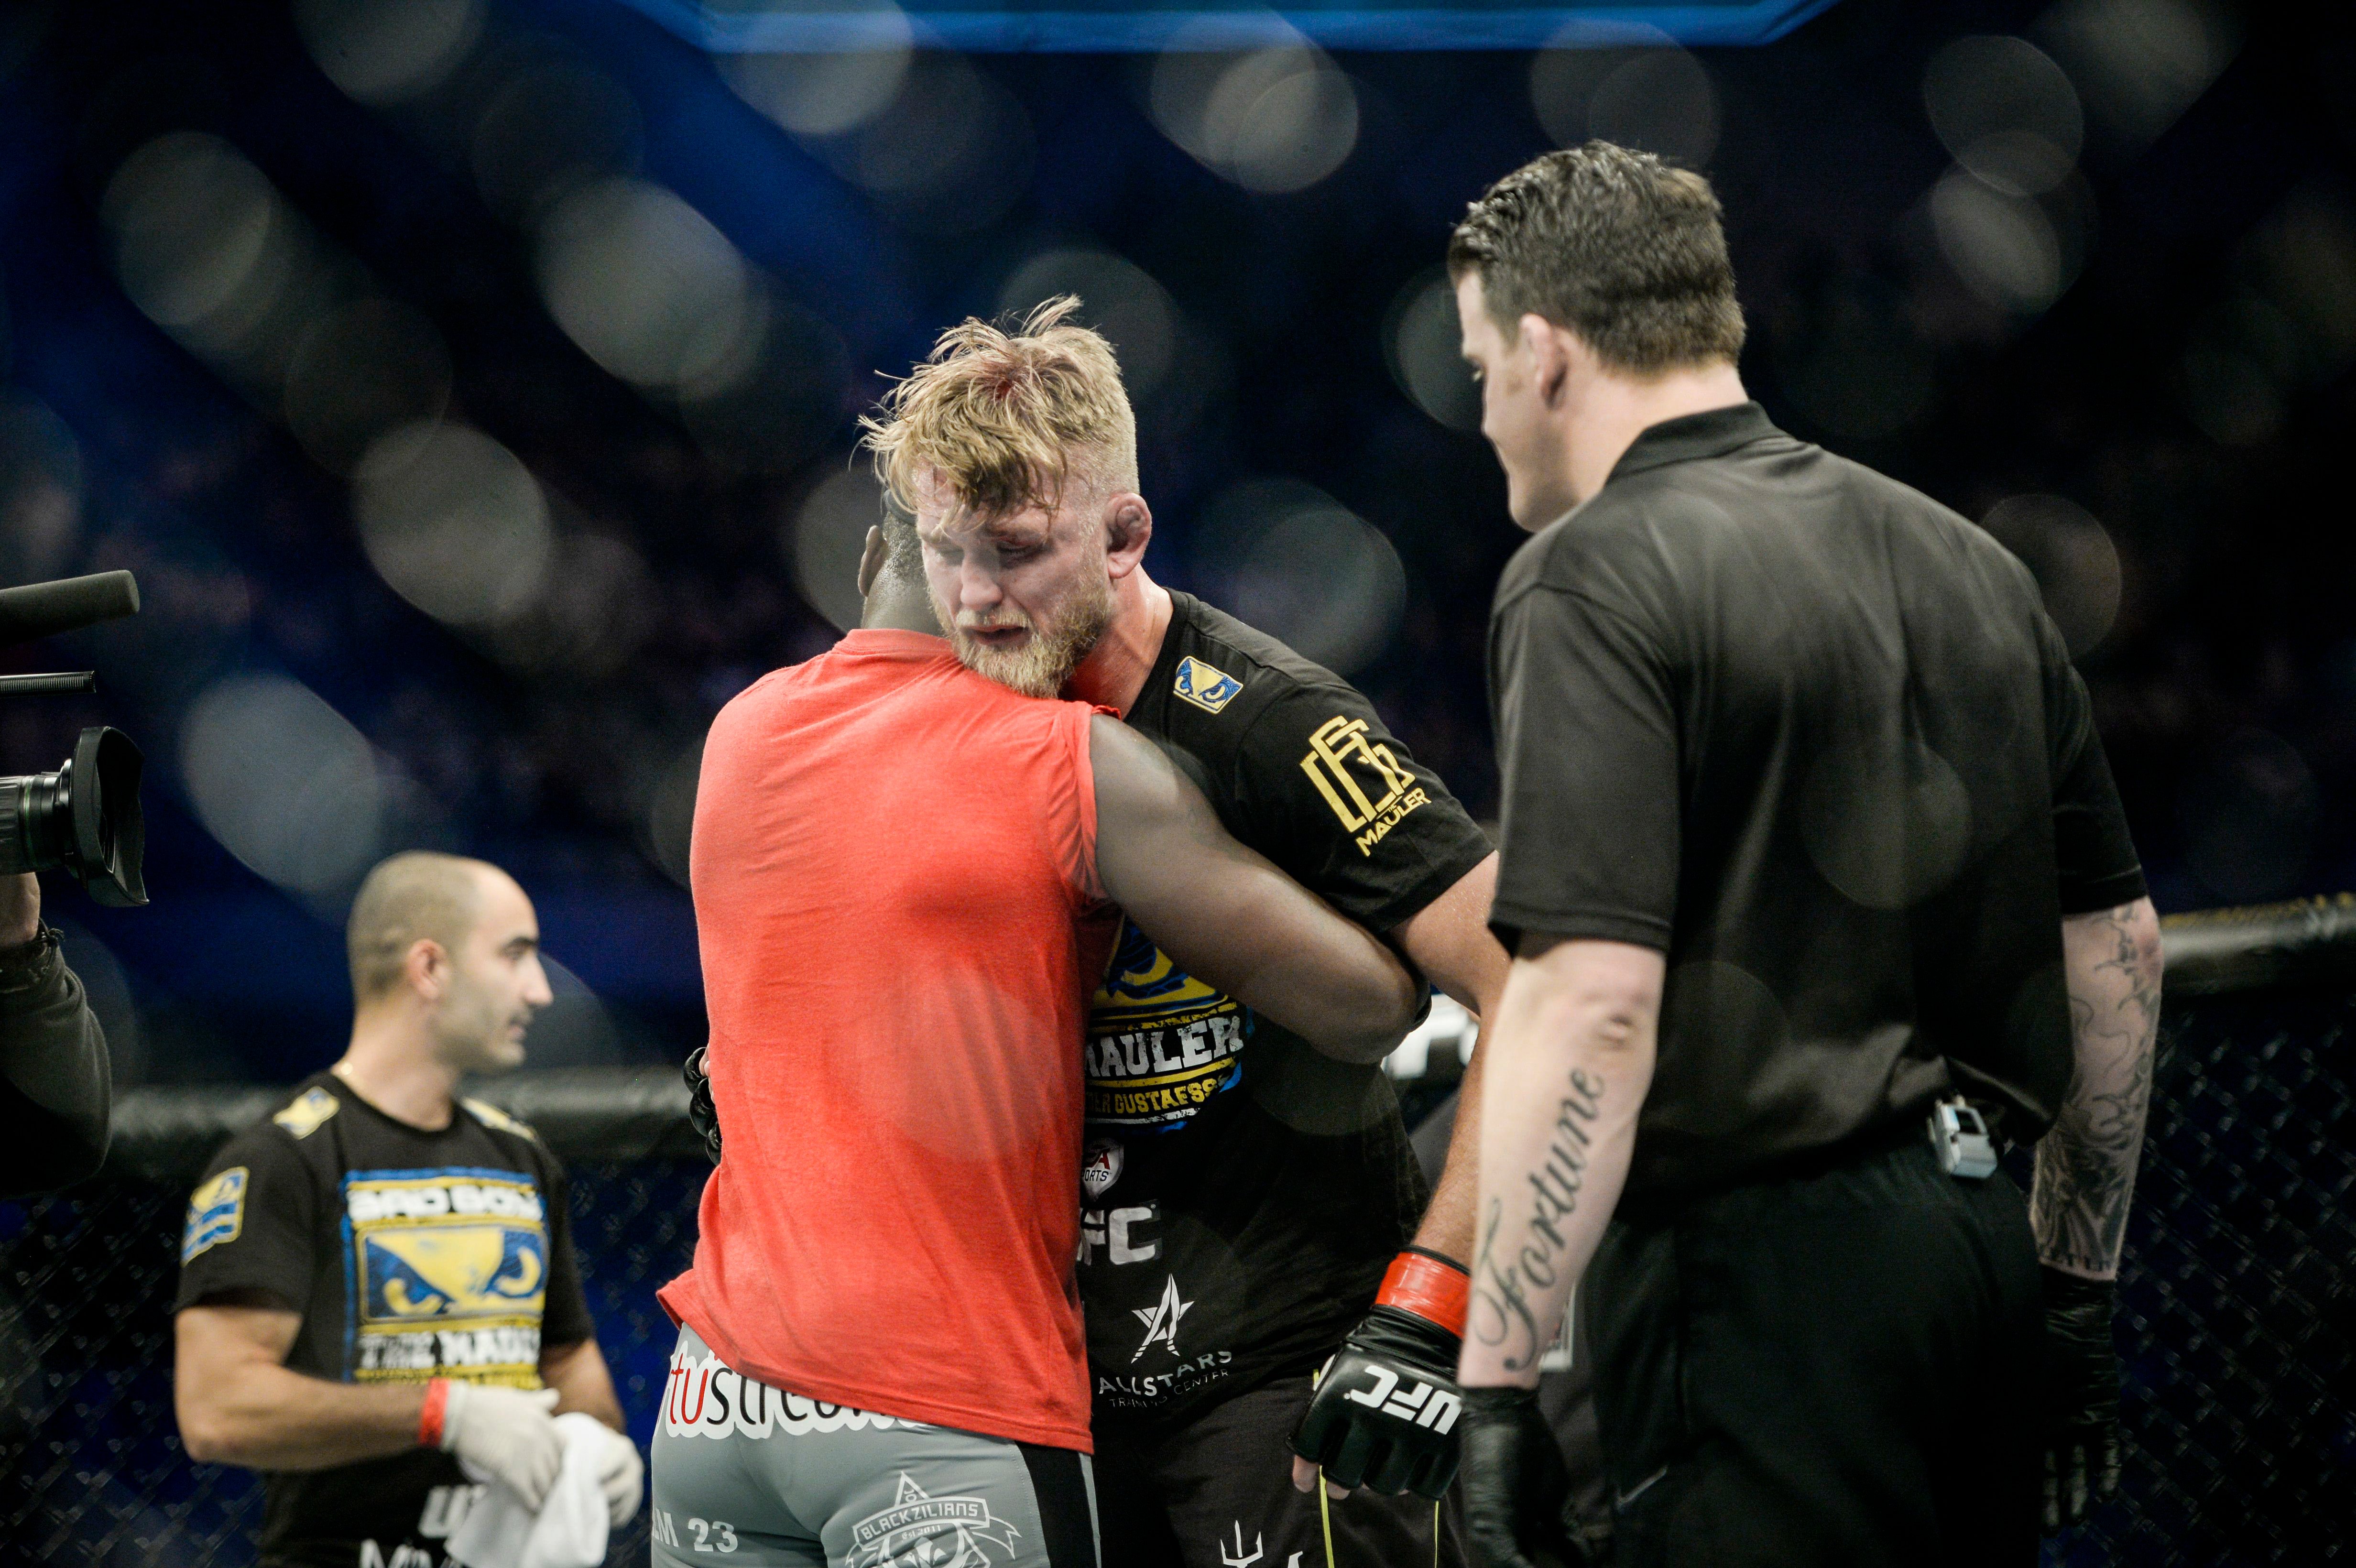 'The Mauler' kramas om av sin motståndare Anthony 'Rumble' Johnson efter att ha förlorat den lätta tungviktsmatchen under MMA-galan UFC Fight Night Stockholm i Tele2 Arena.